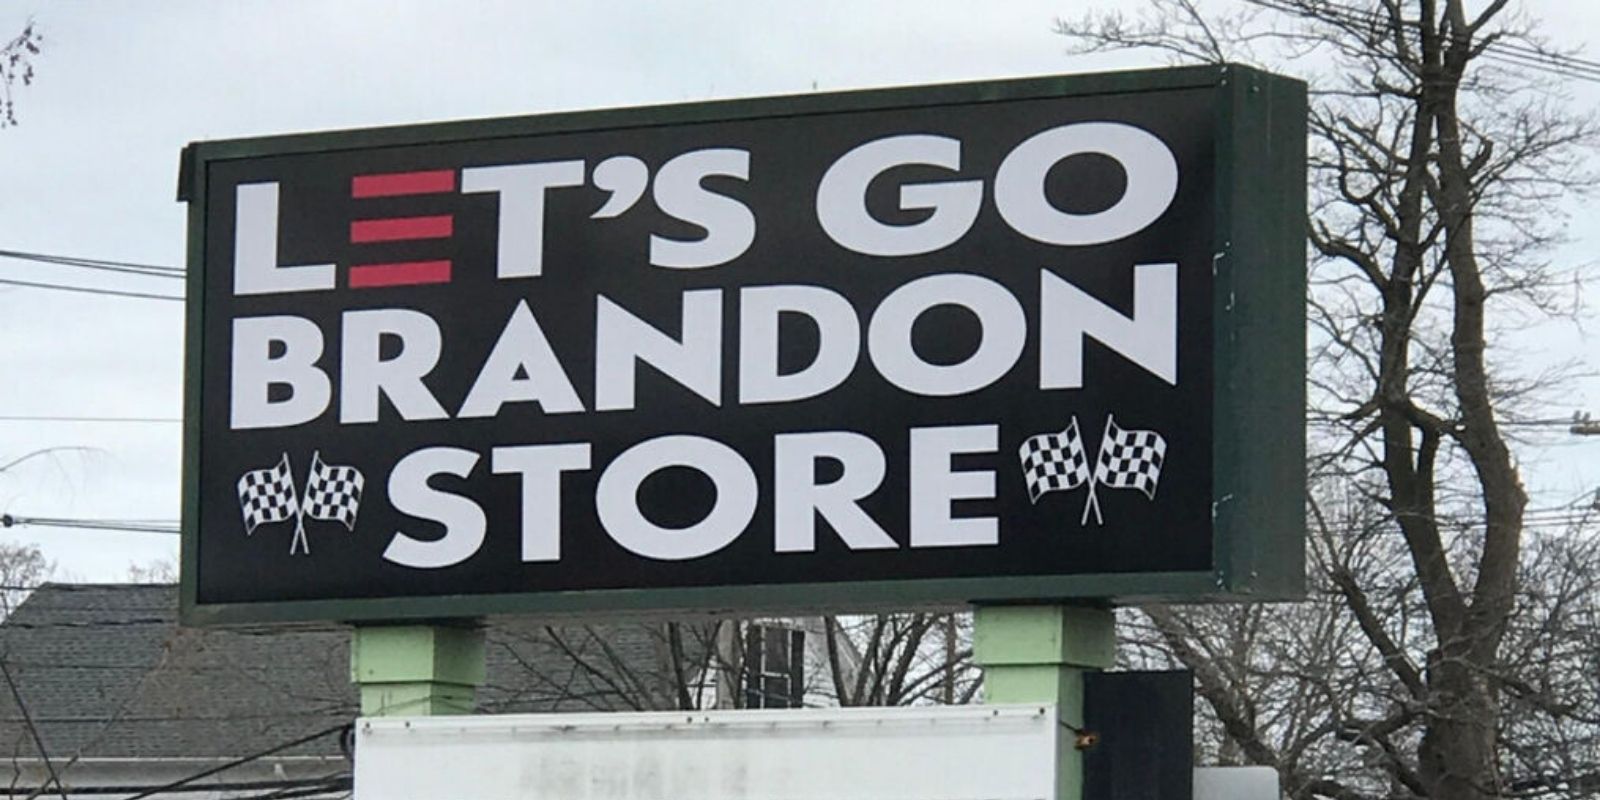 'Let's Go Brandon' store opens in Massachusetts